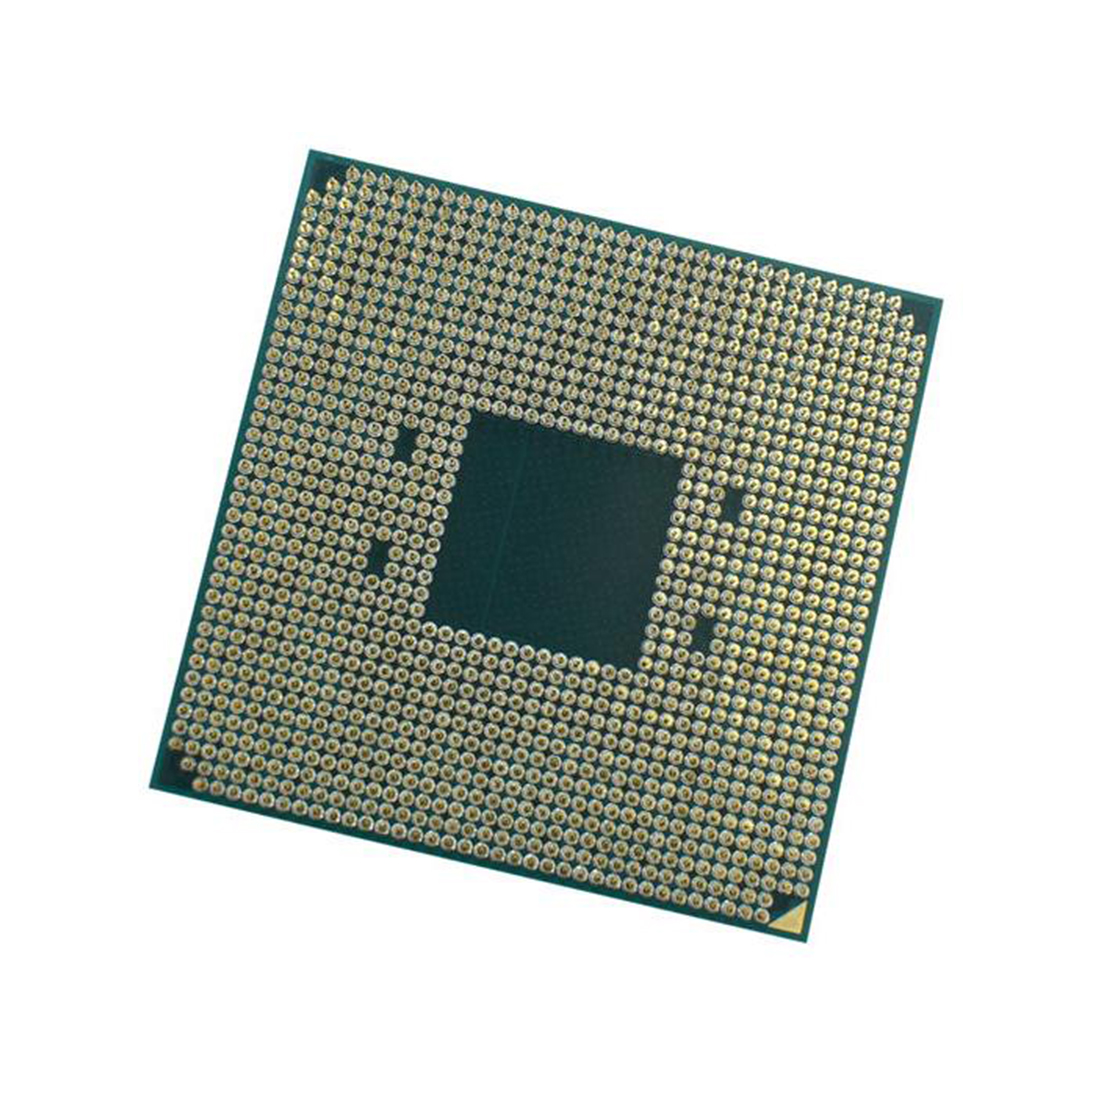 Процессор (CPU) AMD Ryzen 5 5600X 65W AM4